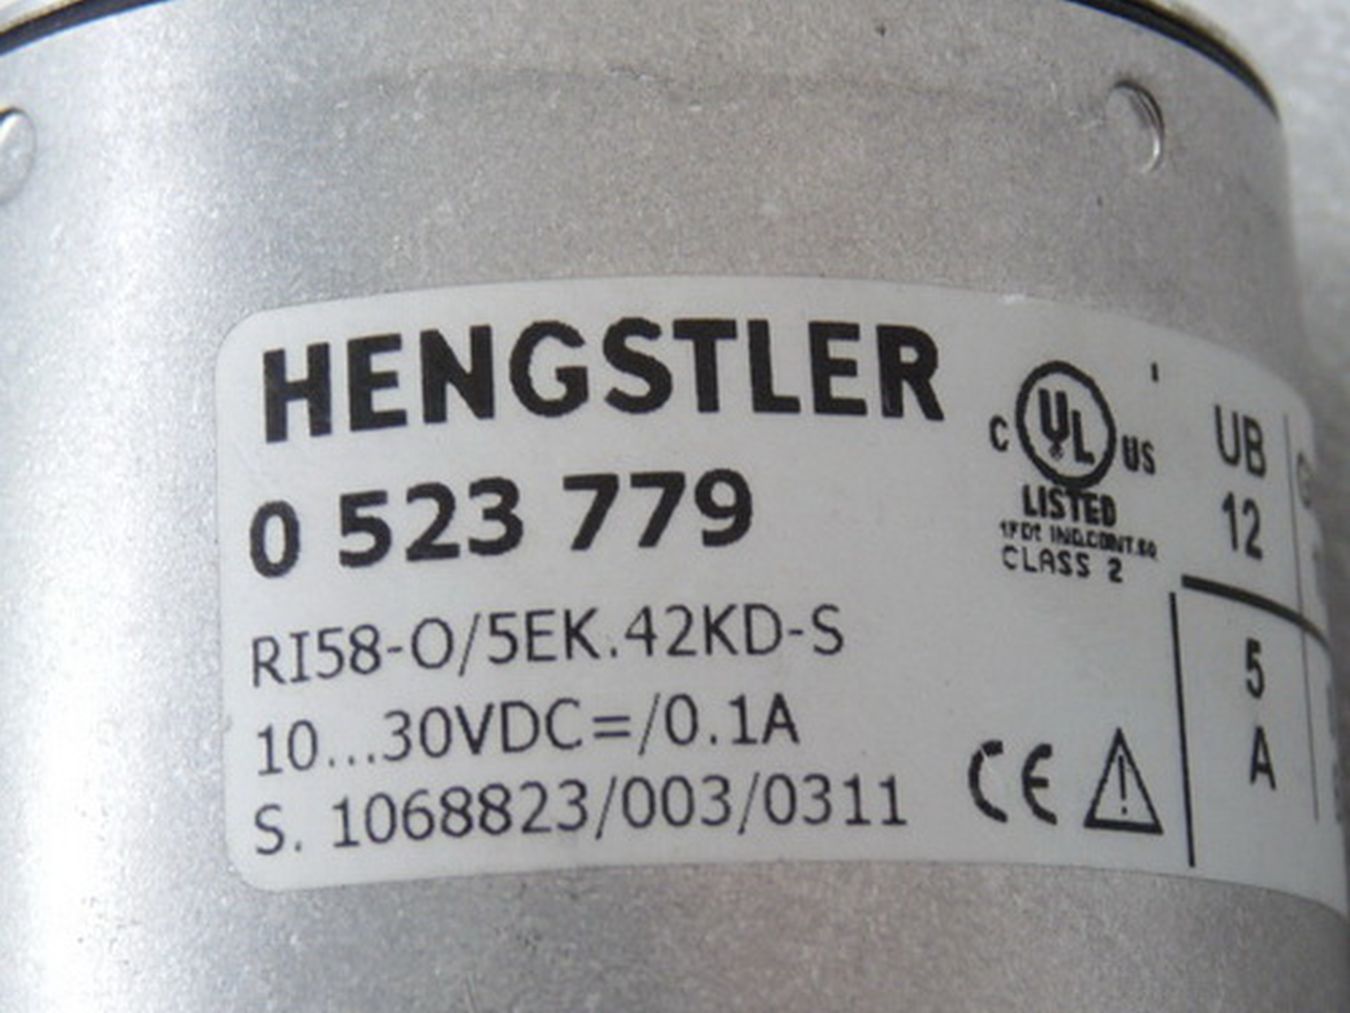 Hengstler RI58-O/5EK.42KD-S Inkrementaler Drehgeber 0523779  RI58-O,亨士乐,PLC